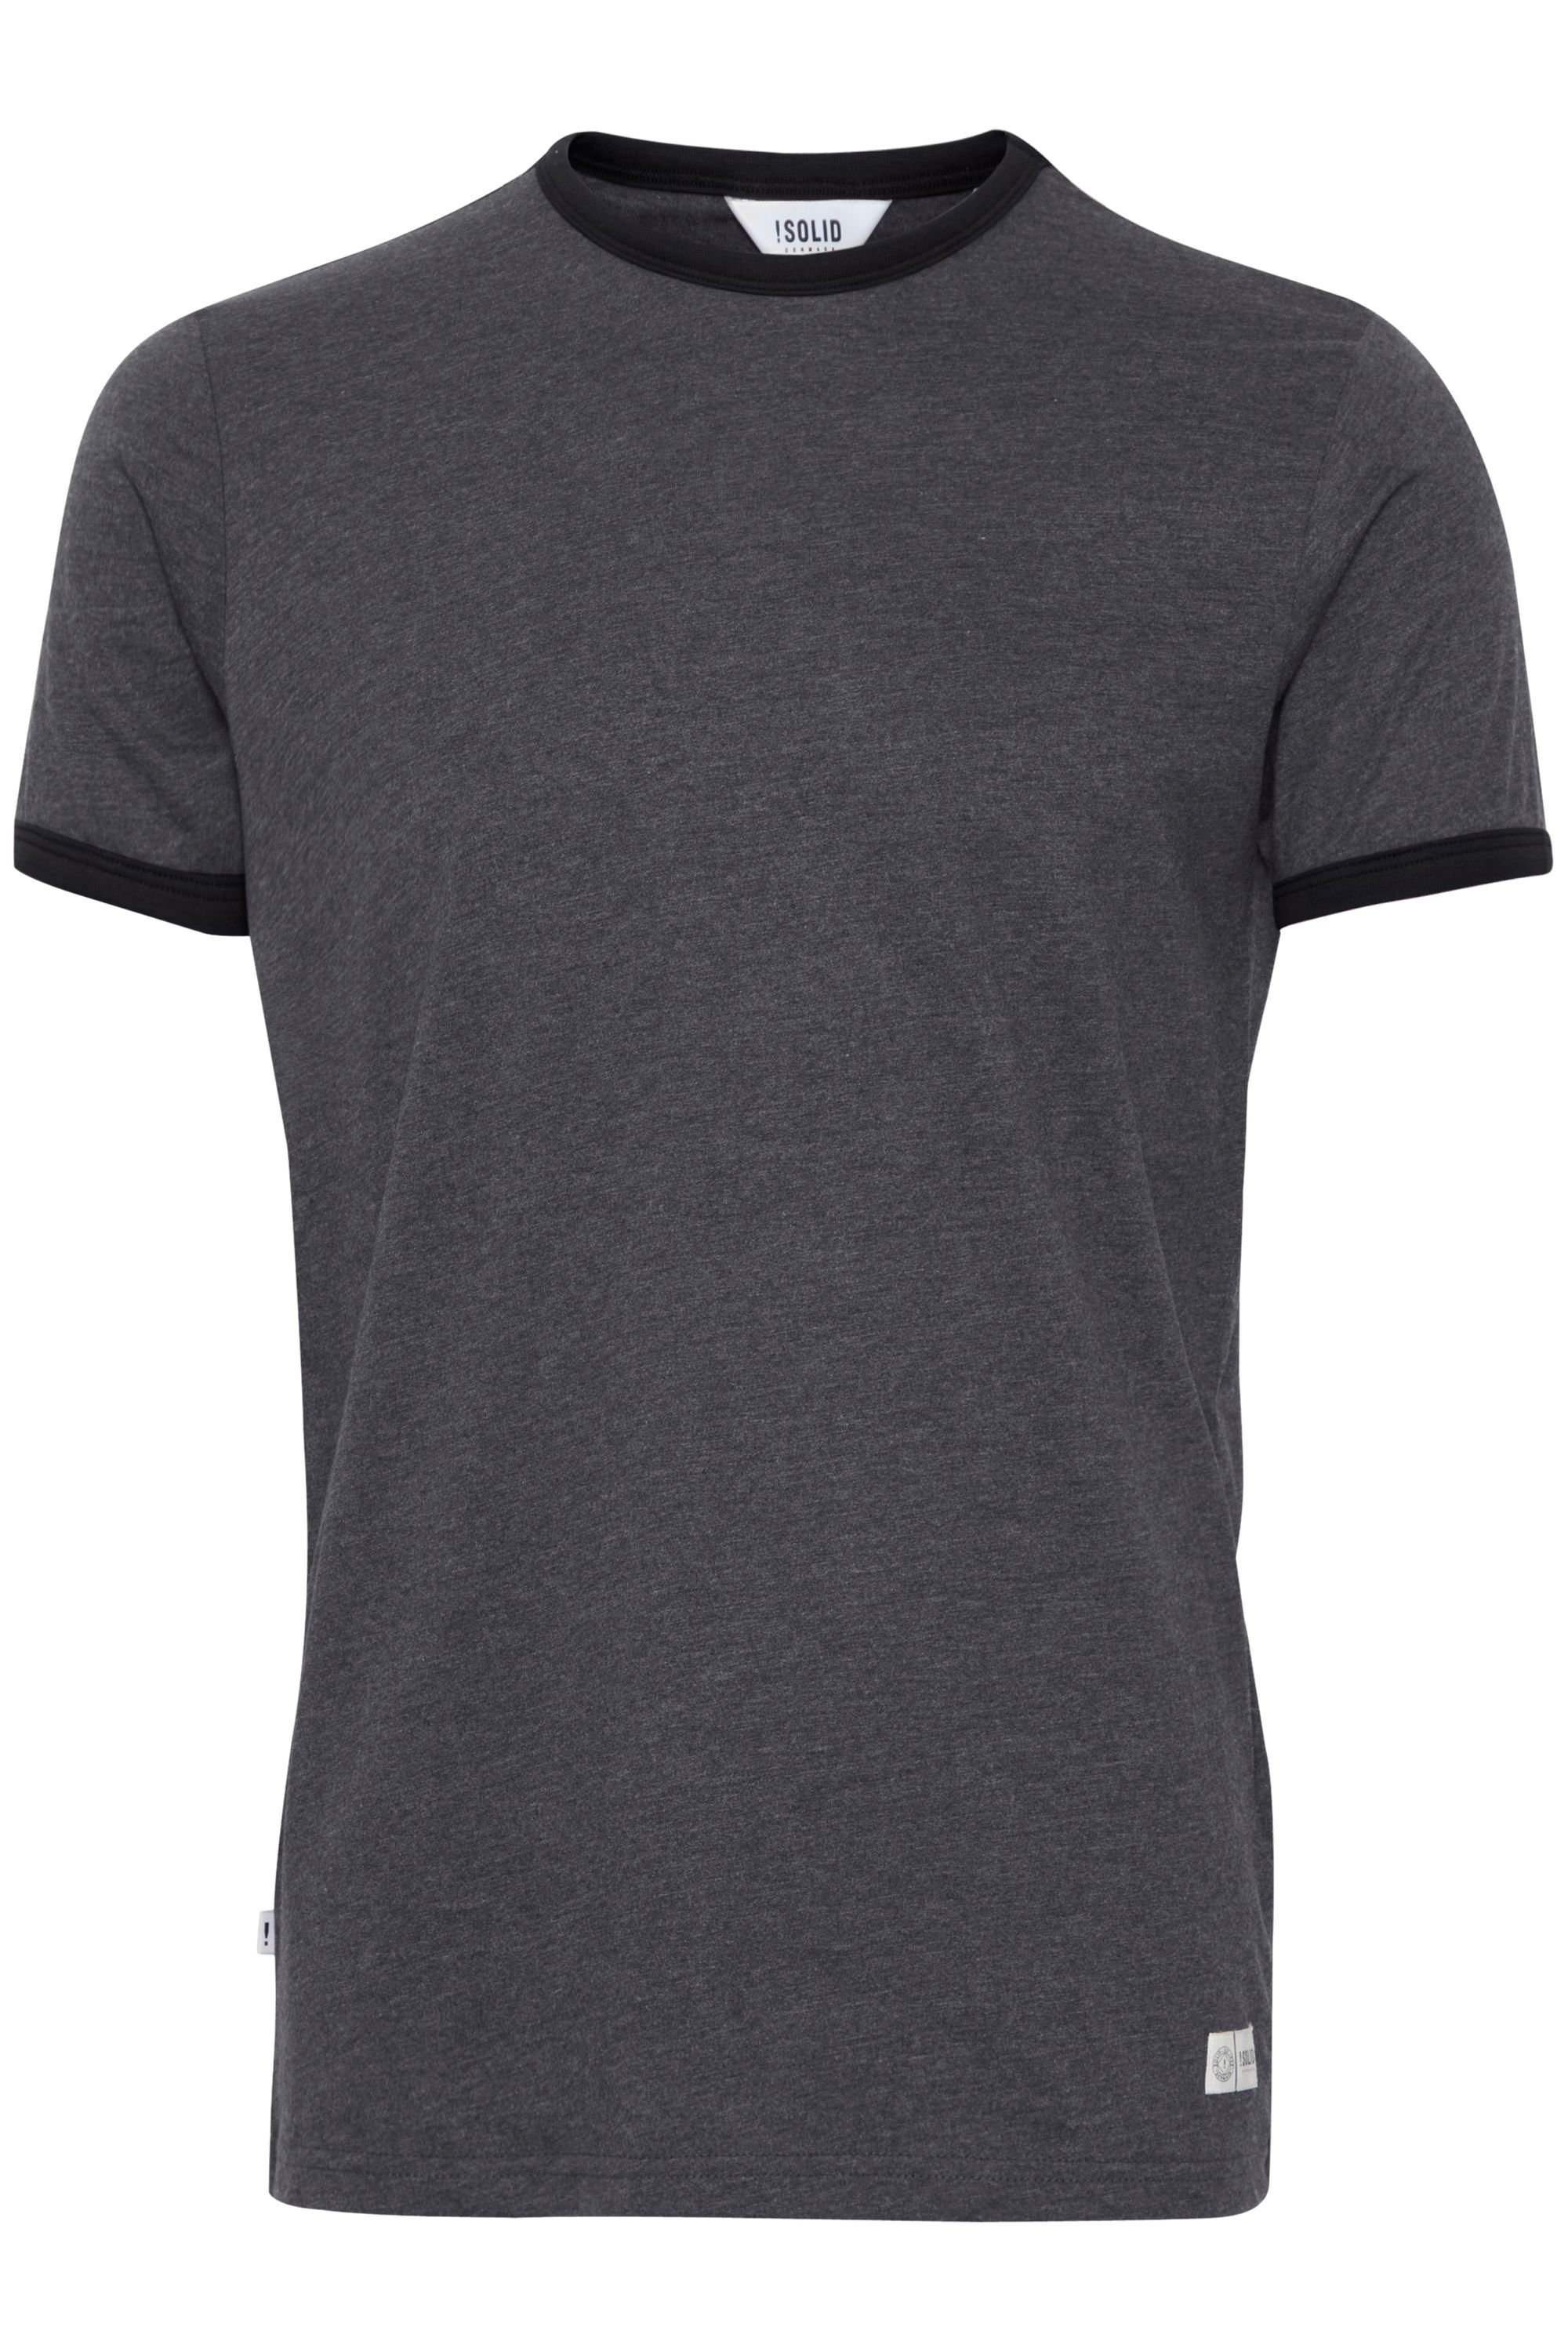 !Solid Rundhalsshirt SDManoldo T-Shirt mit farblich abgesetztem Kragen und Ärmelsaum Forged Iron Melange (2820M)